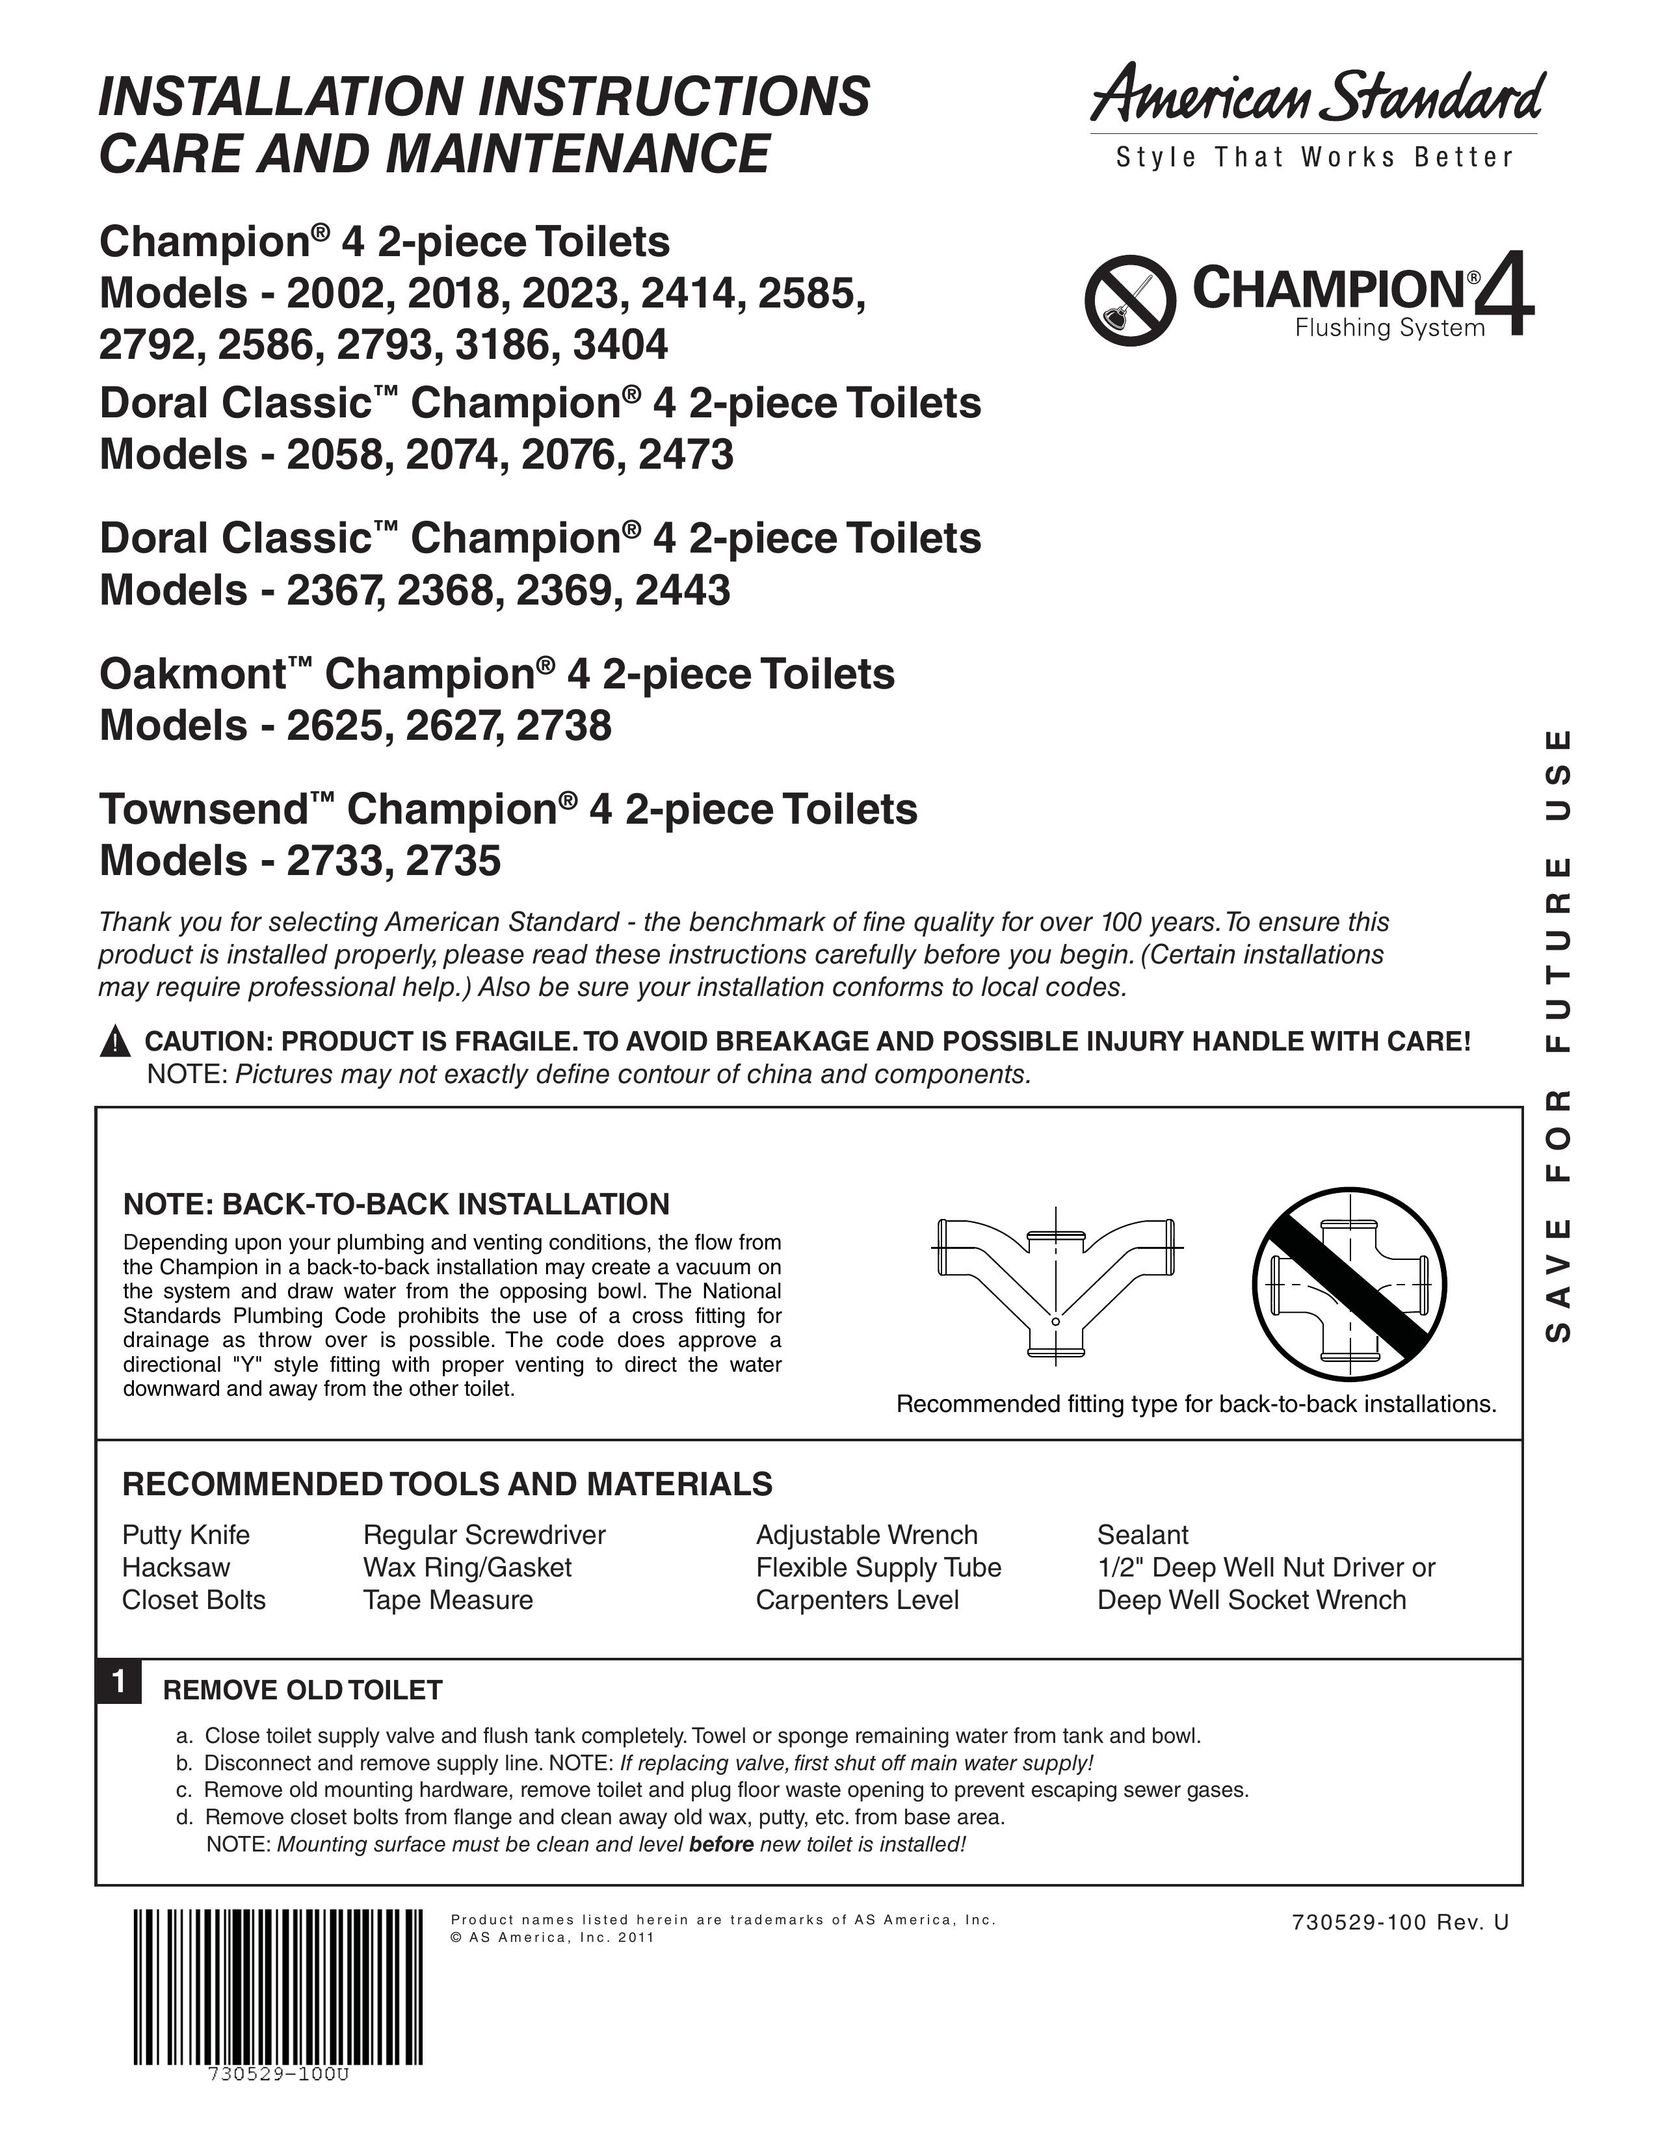 American Standard 2076 Plumbing Product User Manual